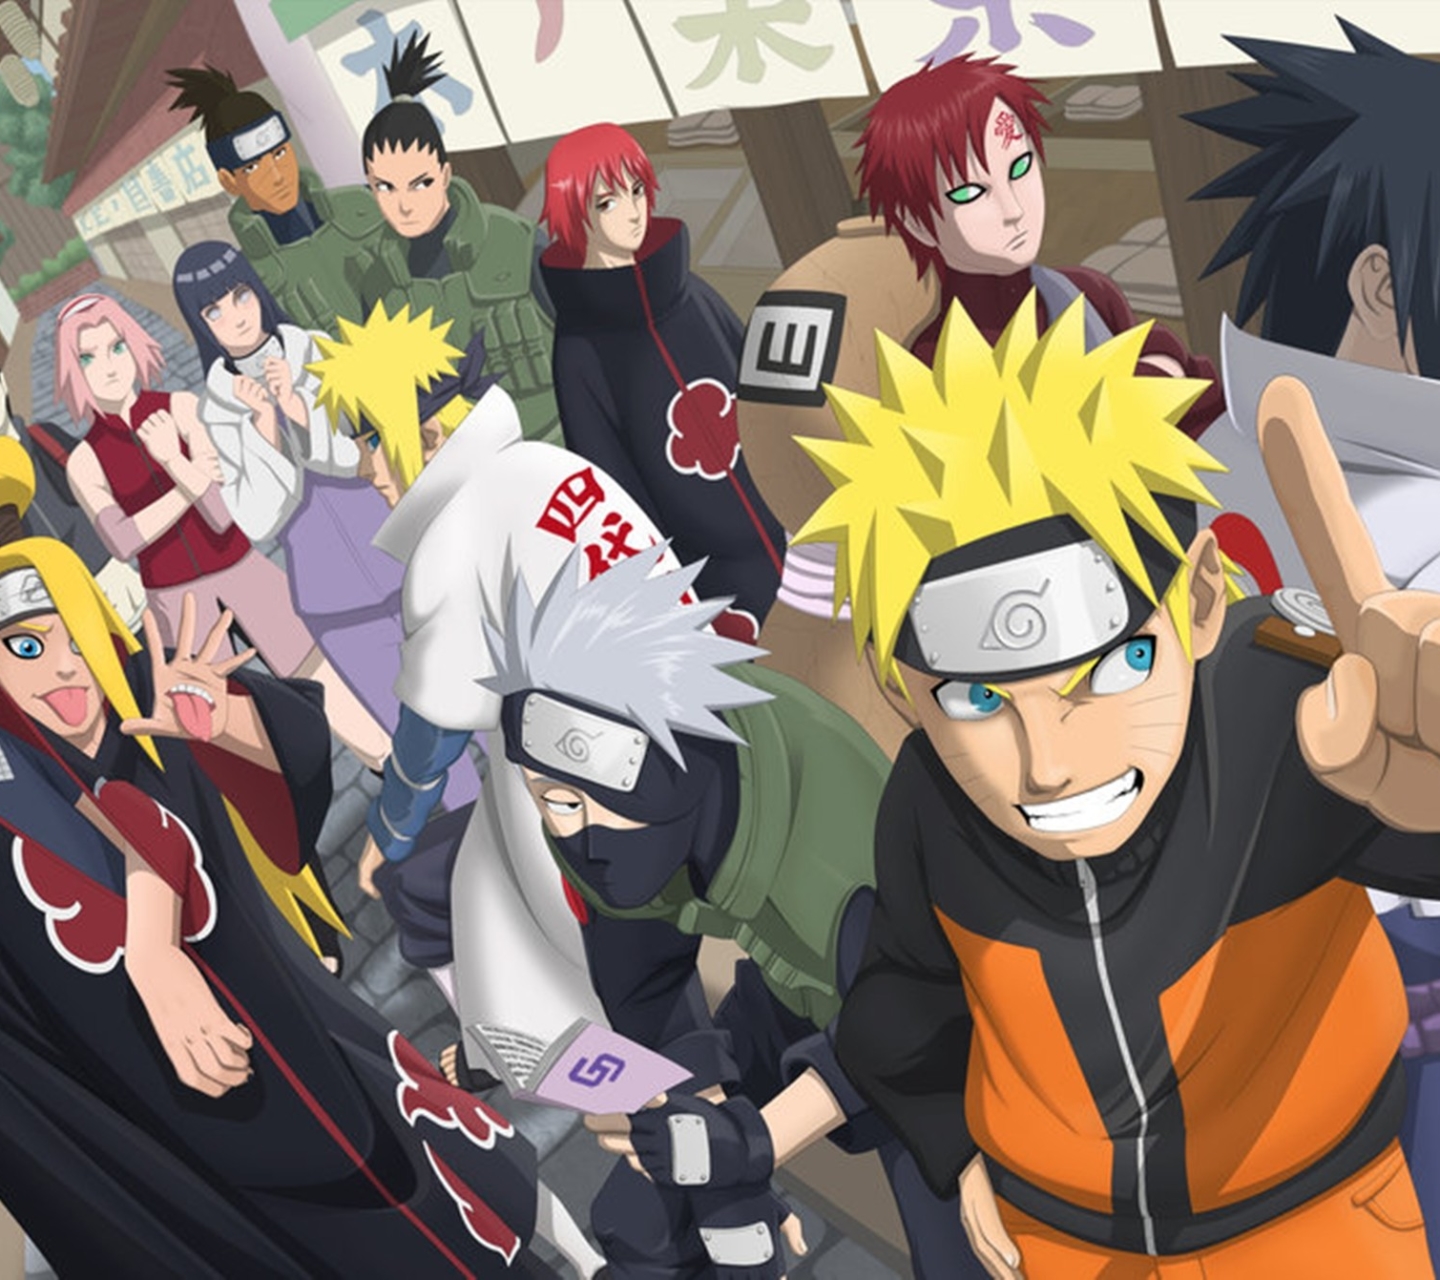 Descarga gratuita de fondo de pantalla para móvil de Naruto, Animado, Sasuke Uchiha, Itachi Uchiha, Gaara (Naruto), Minato Namikaze, Naruto Uzumaki, Kakashi Hatake, Kurama (Naruto), Deidara (Naruto).